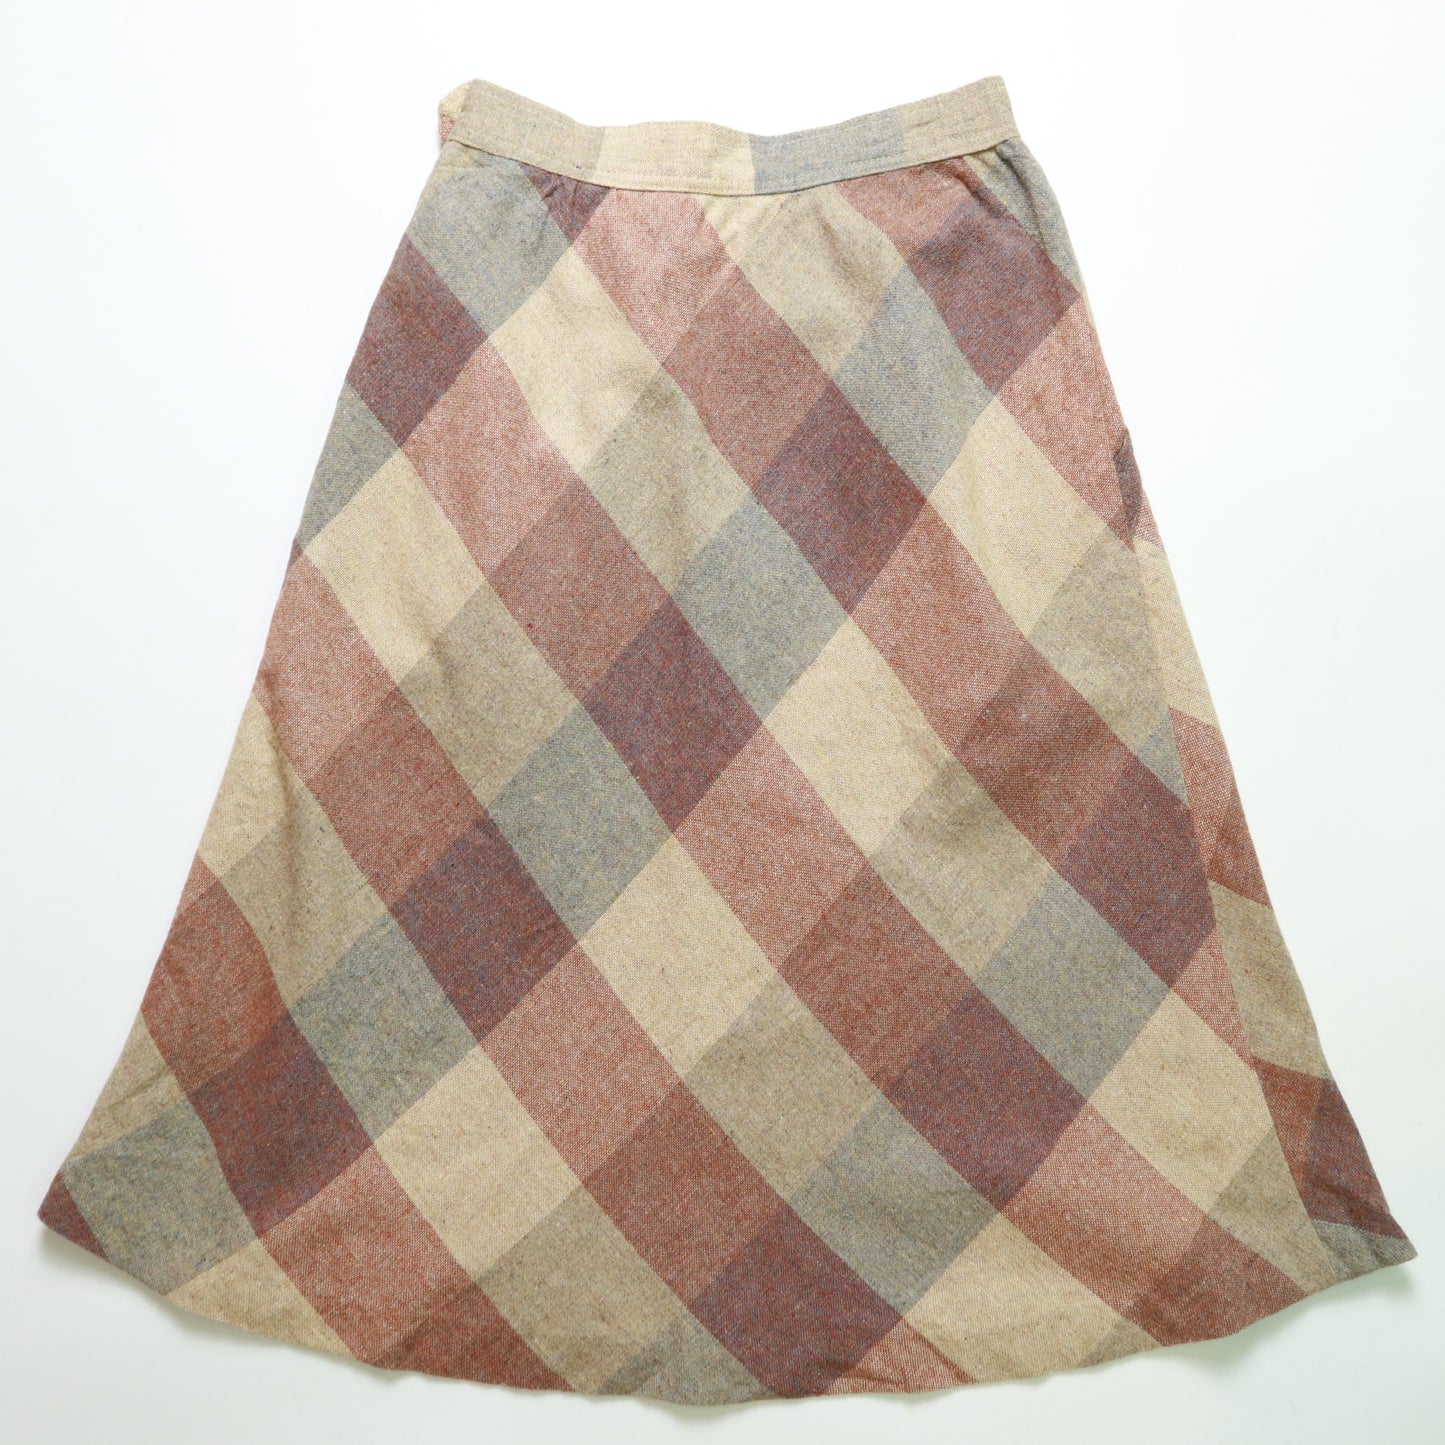 1980s 美國菱格紋羊毛半身裙